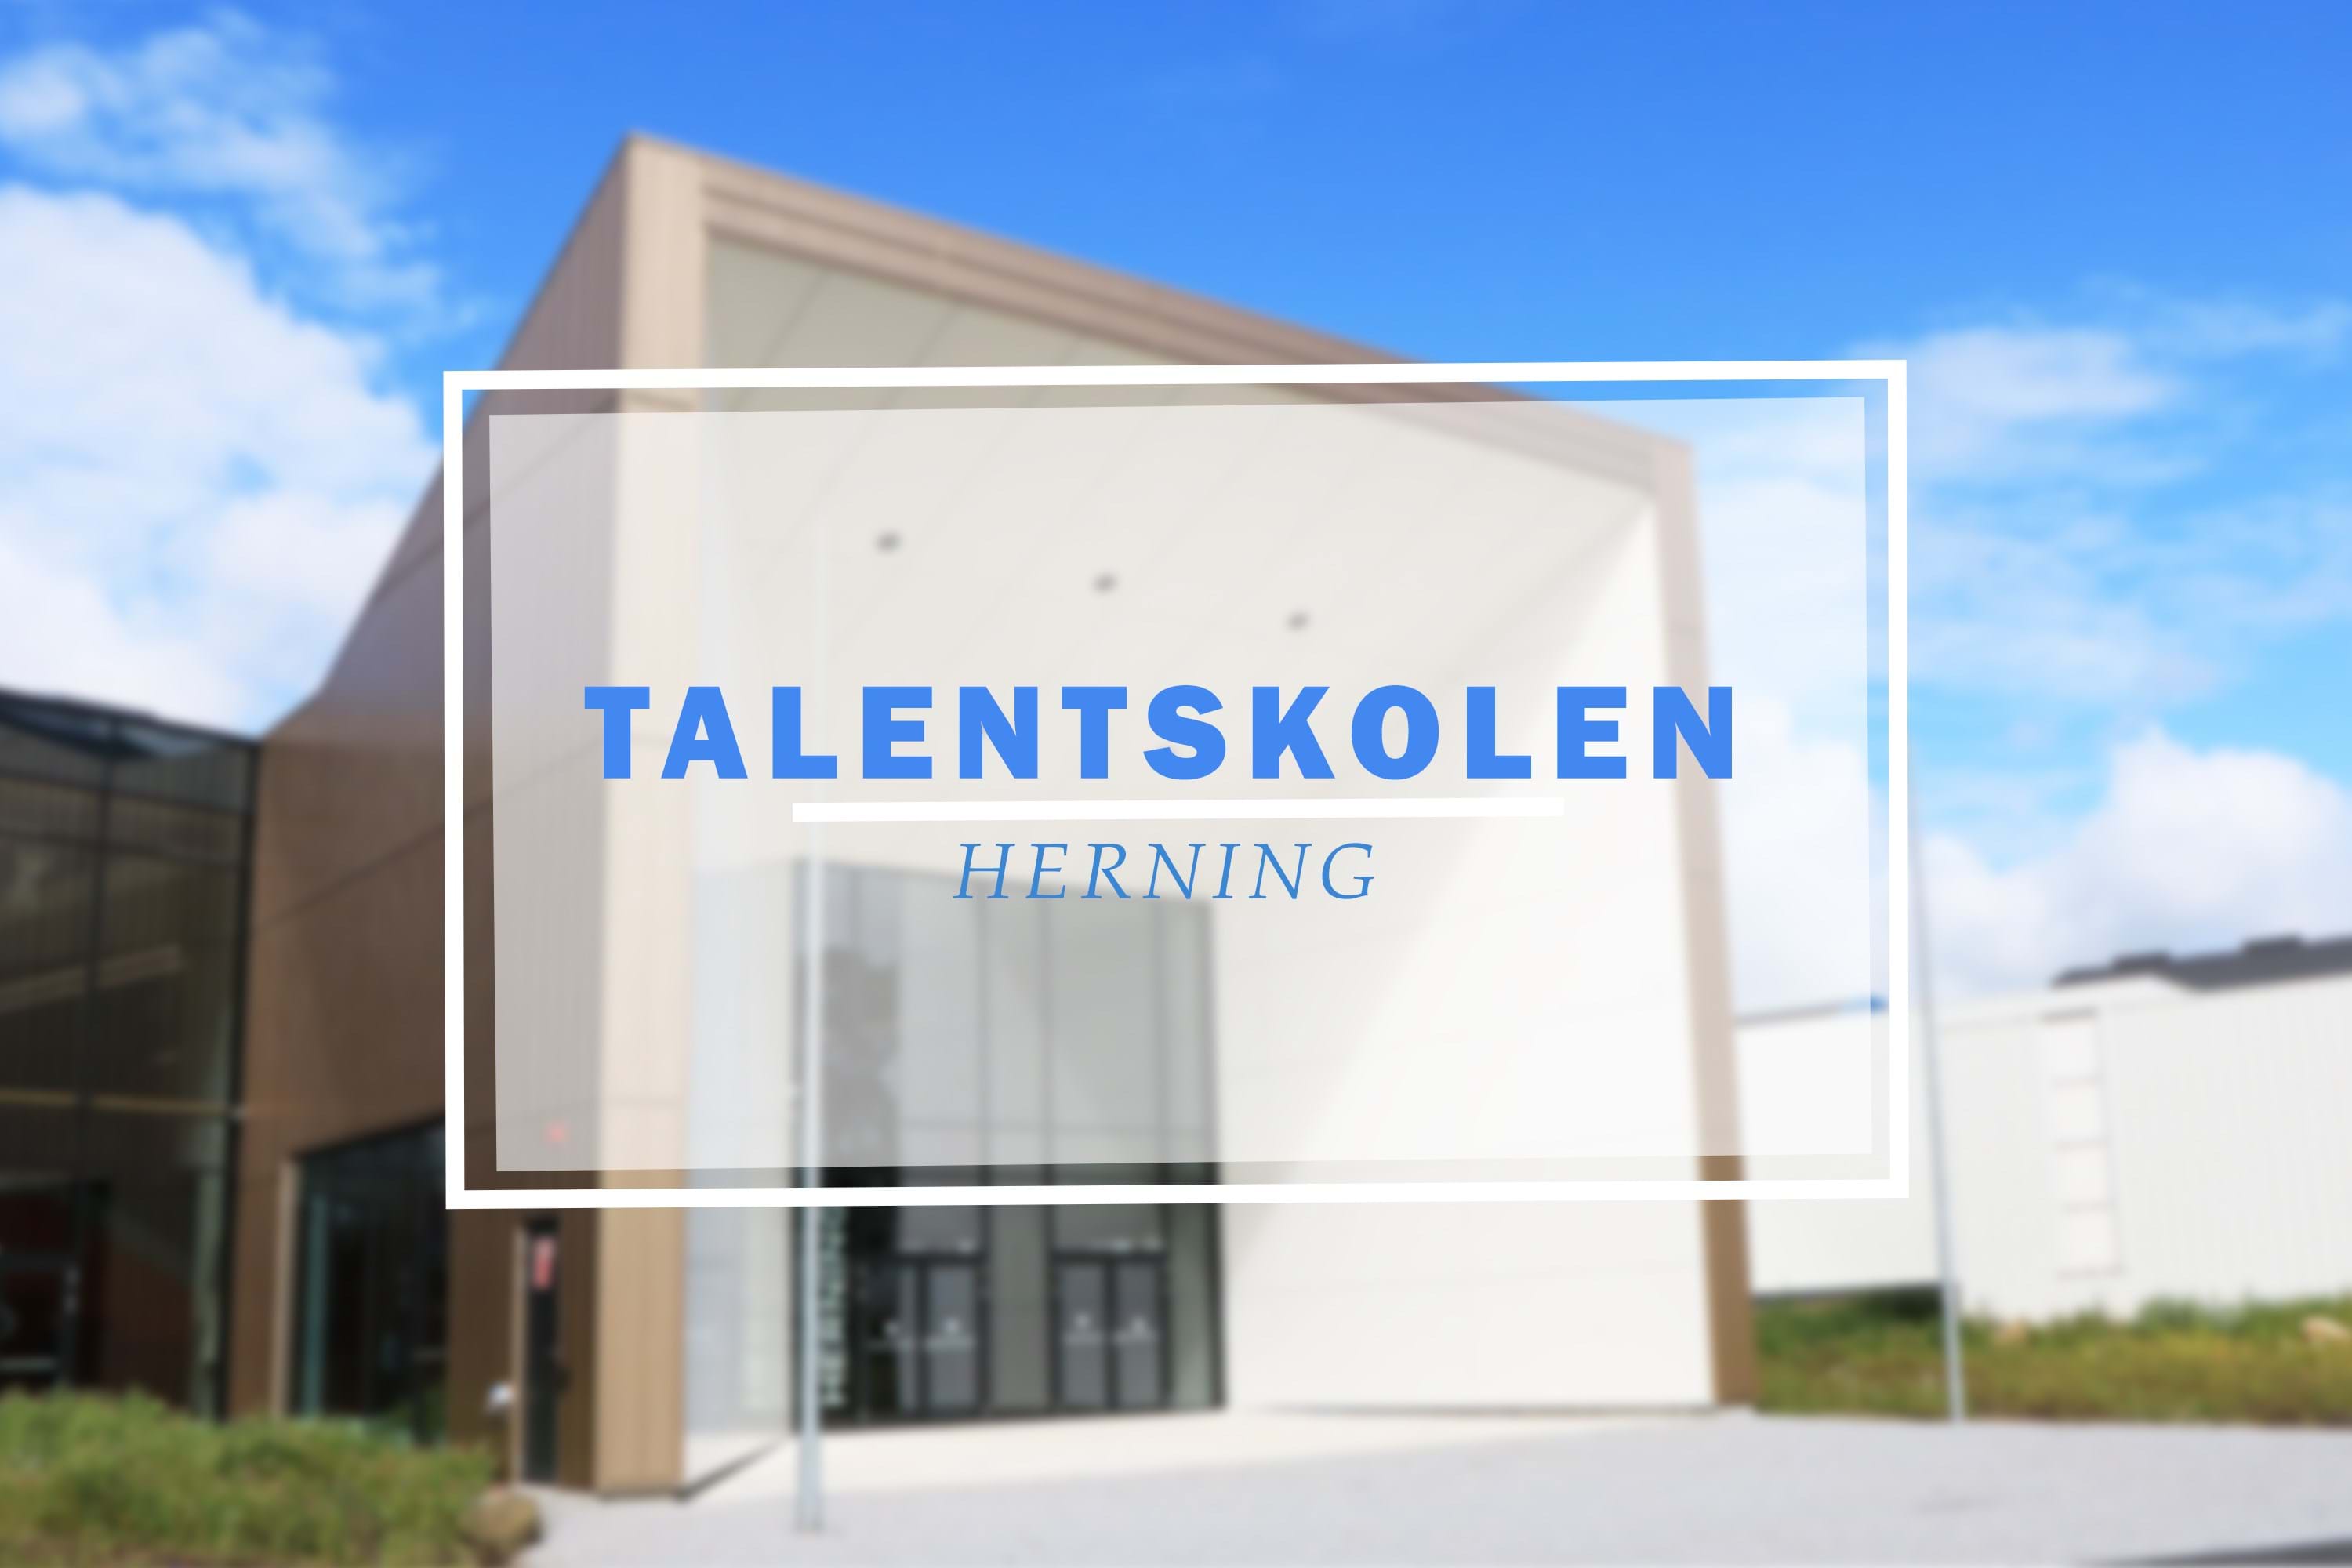 Talentskolen, Herning